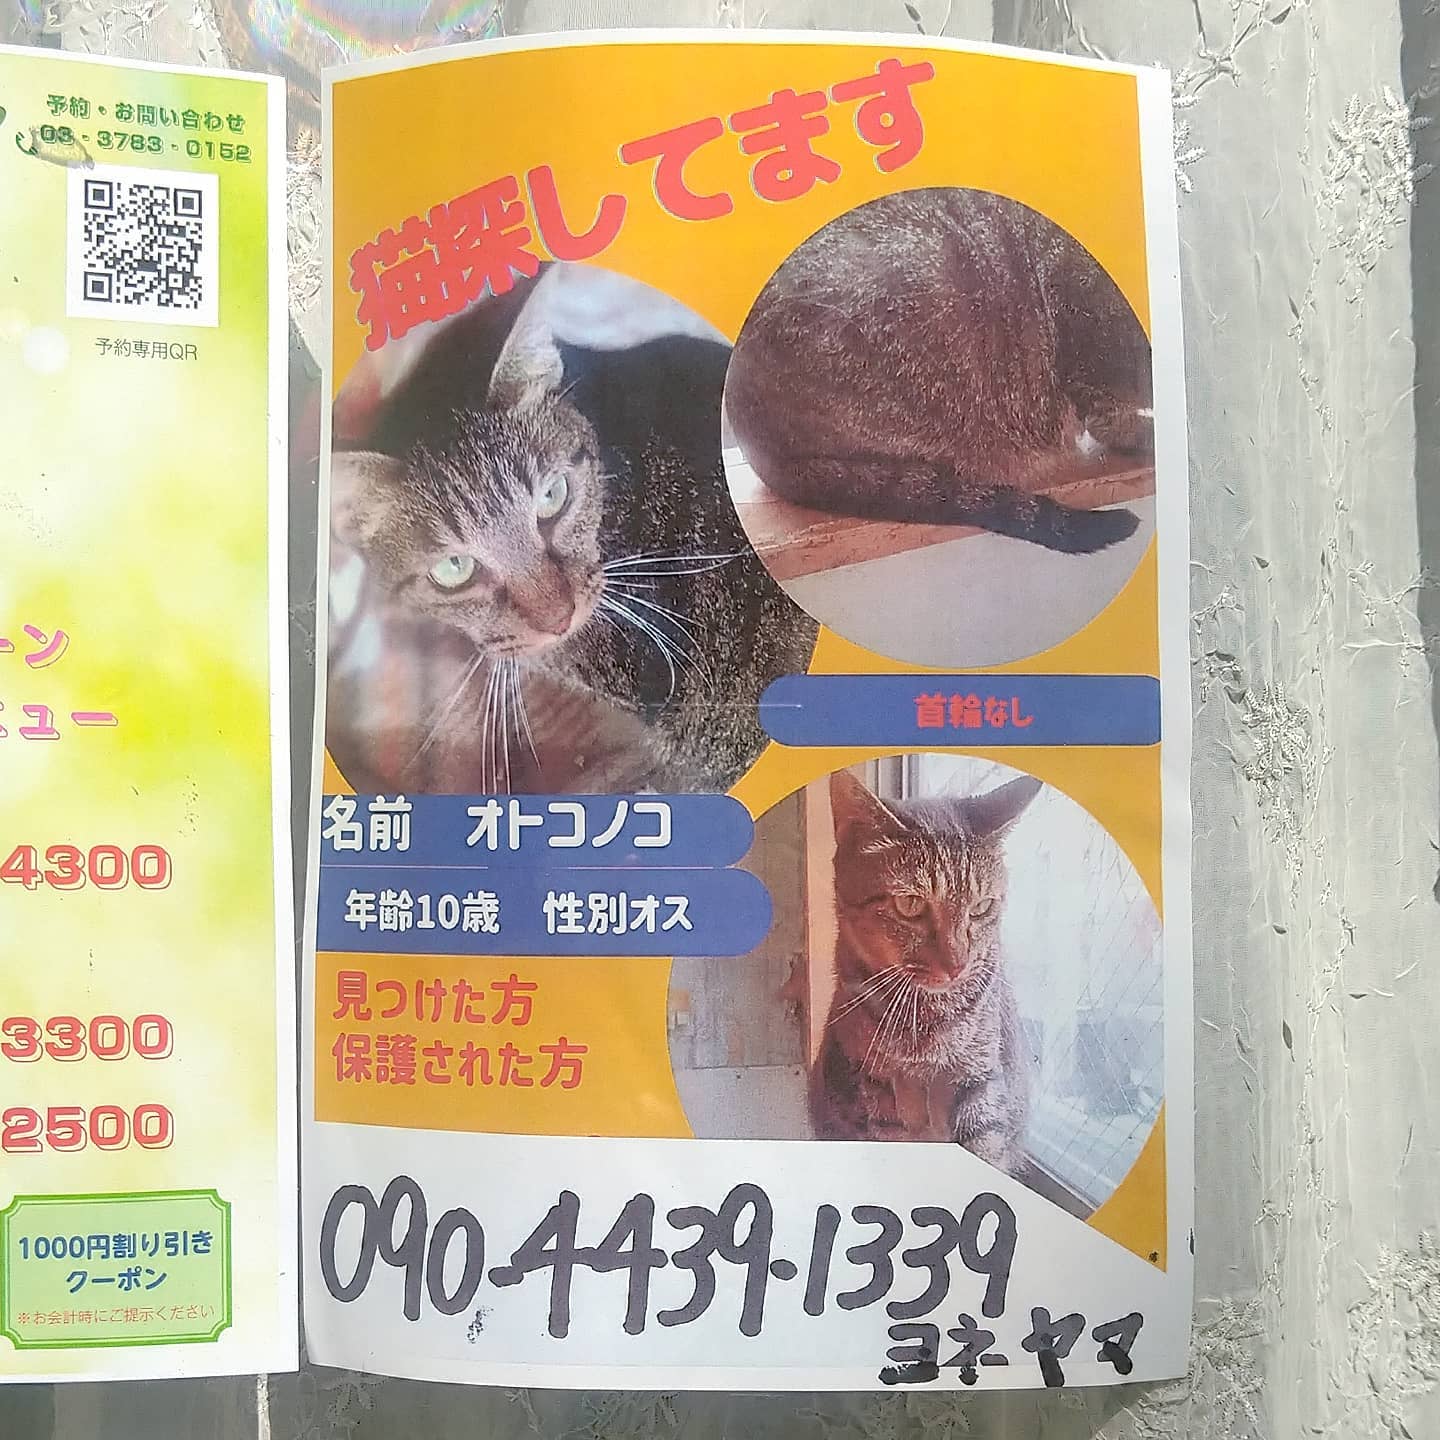 #武蔵小山情報 #迷い猫 オトコノコを探してます。見つかりますように…#猫 #迷い猫探してます #迷い猫さがしてます #迷い猫捜索中 #迷い猫捜索 #猫を探しています #猫探してます #武蔵小山